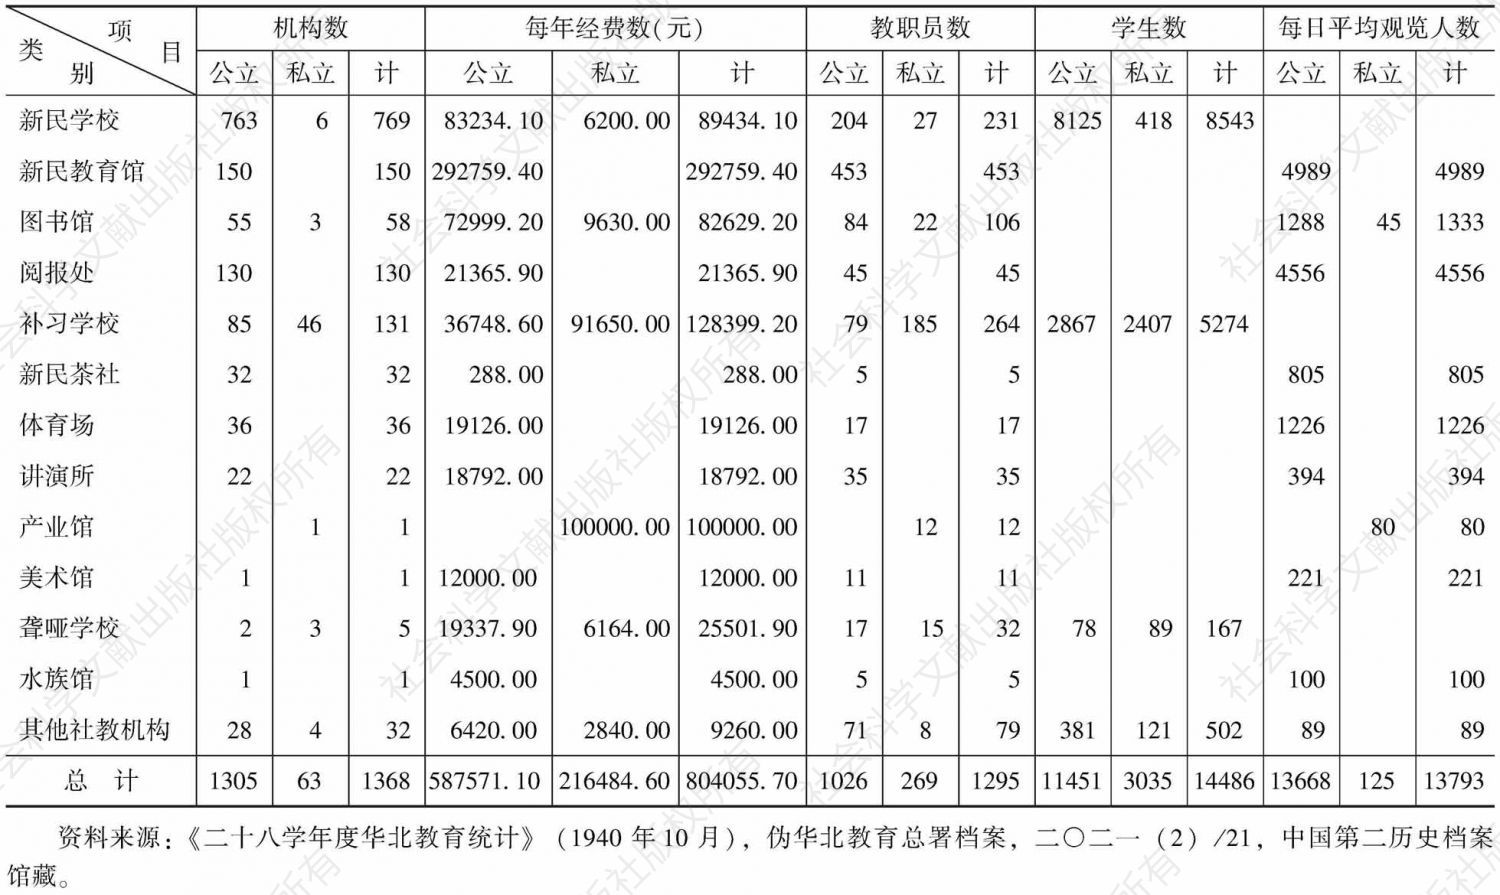 表6-4 1939年度伪华北各省市社会教育概况统计